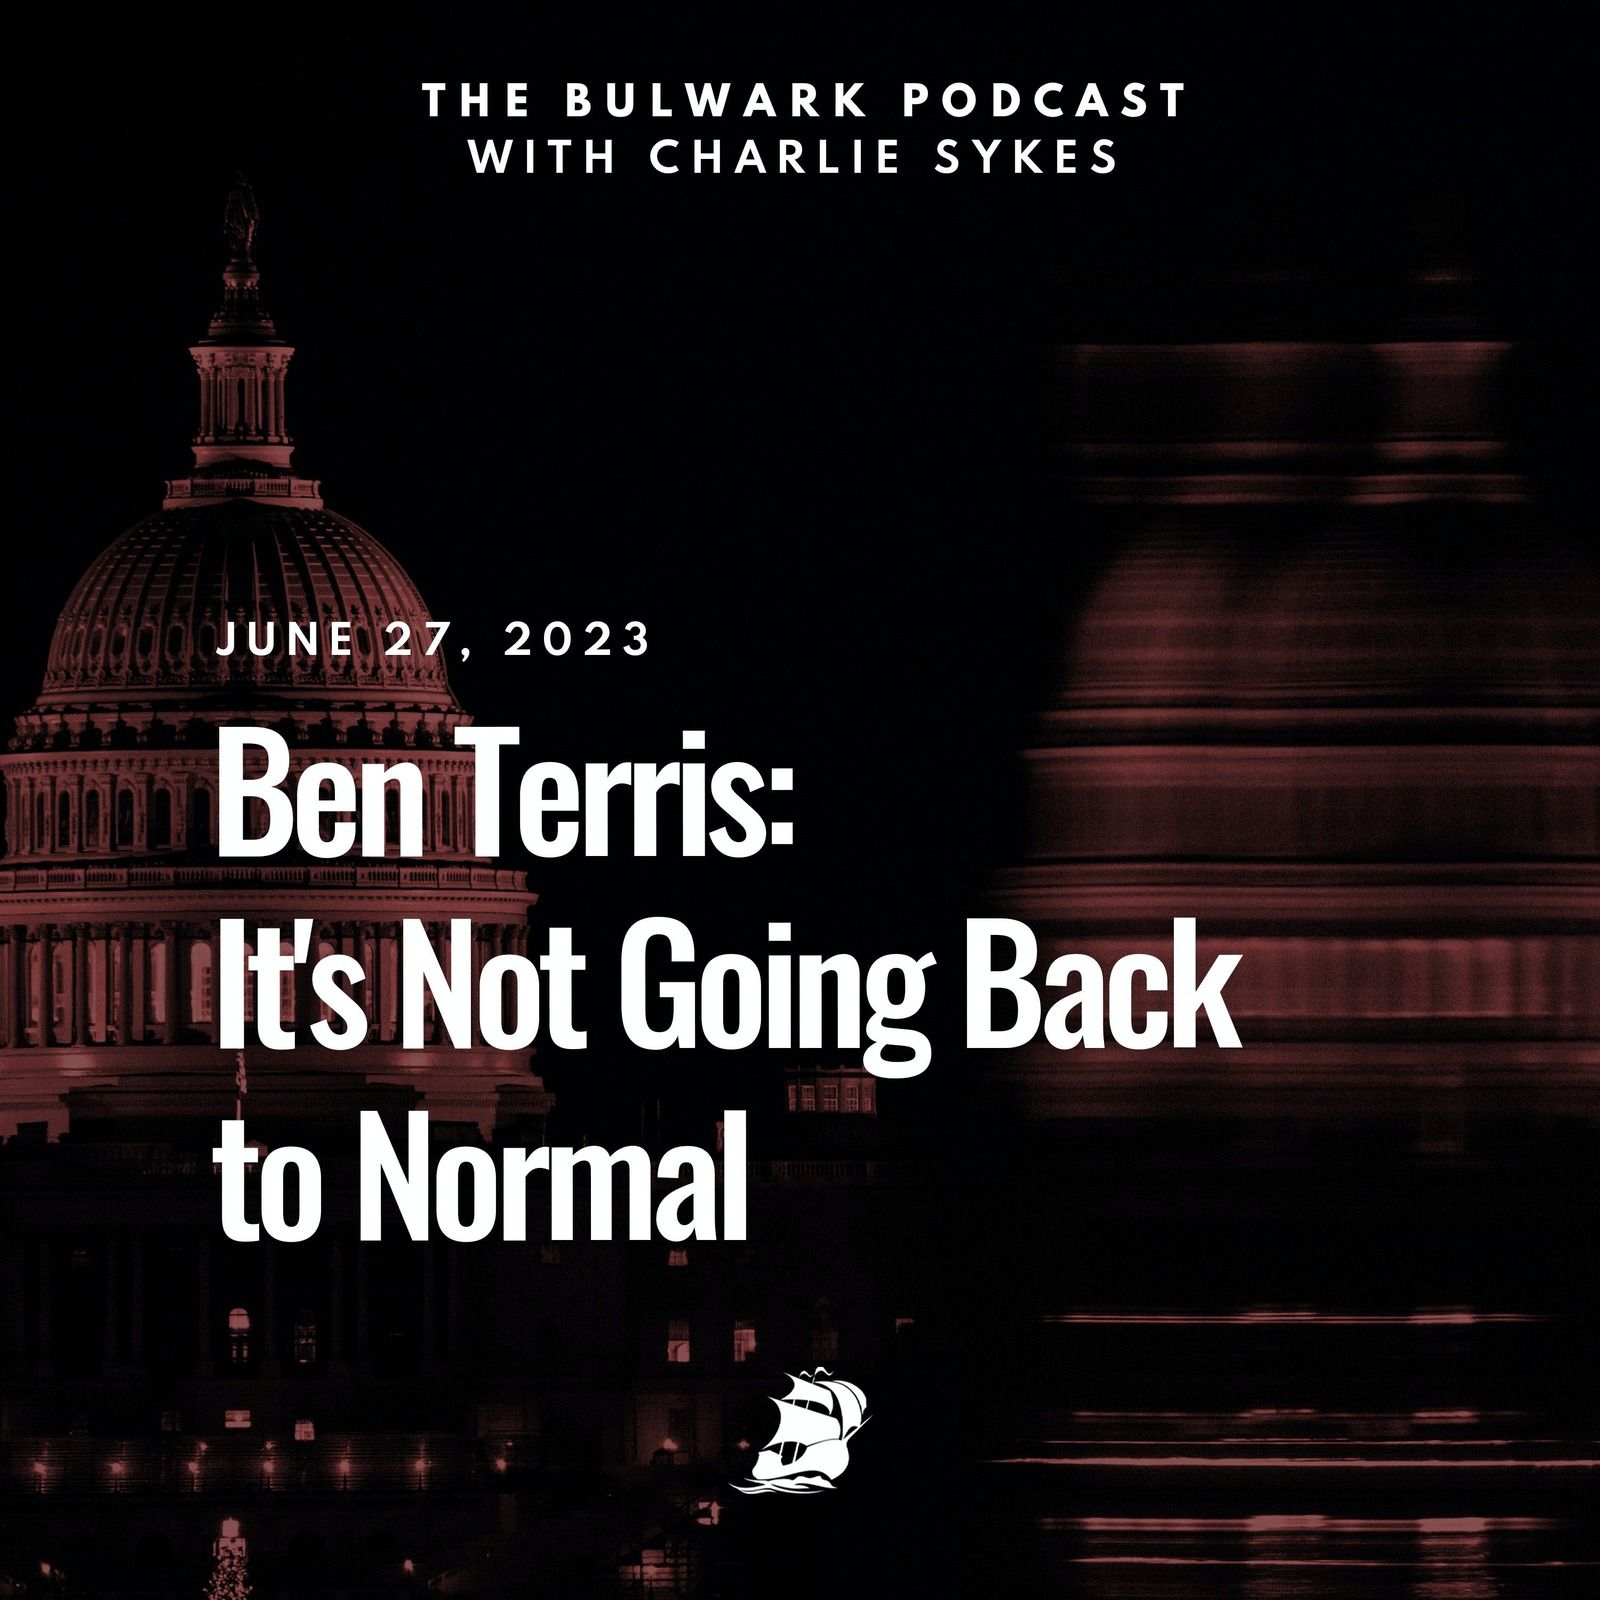 Ben Terris: It's Not Going Back to Normal